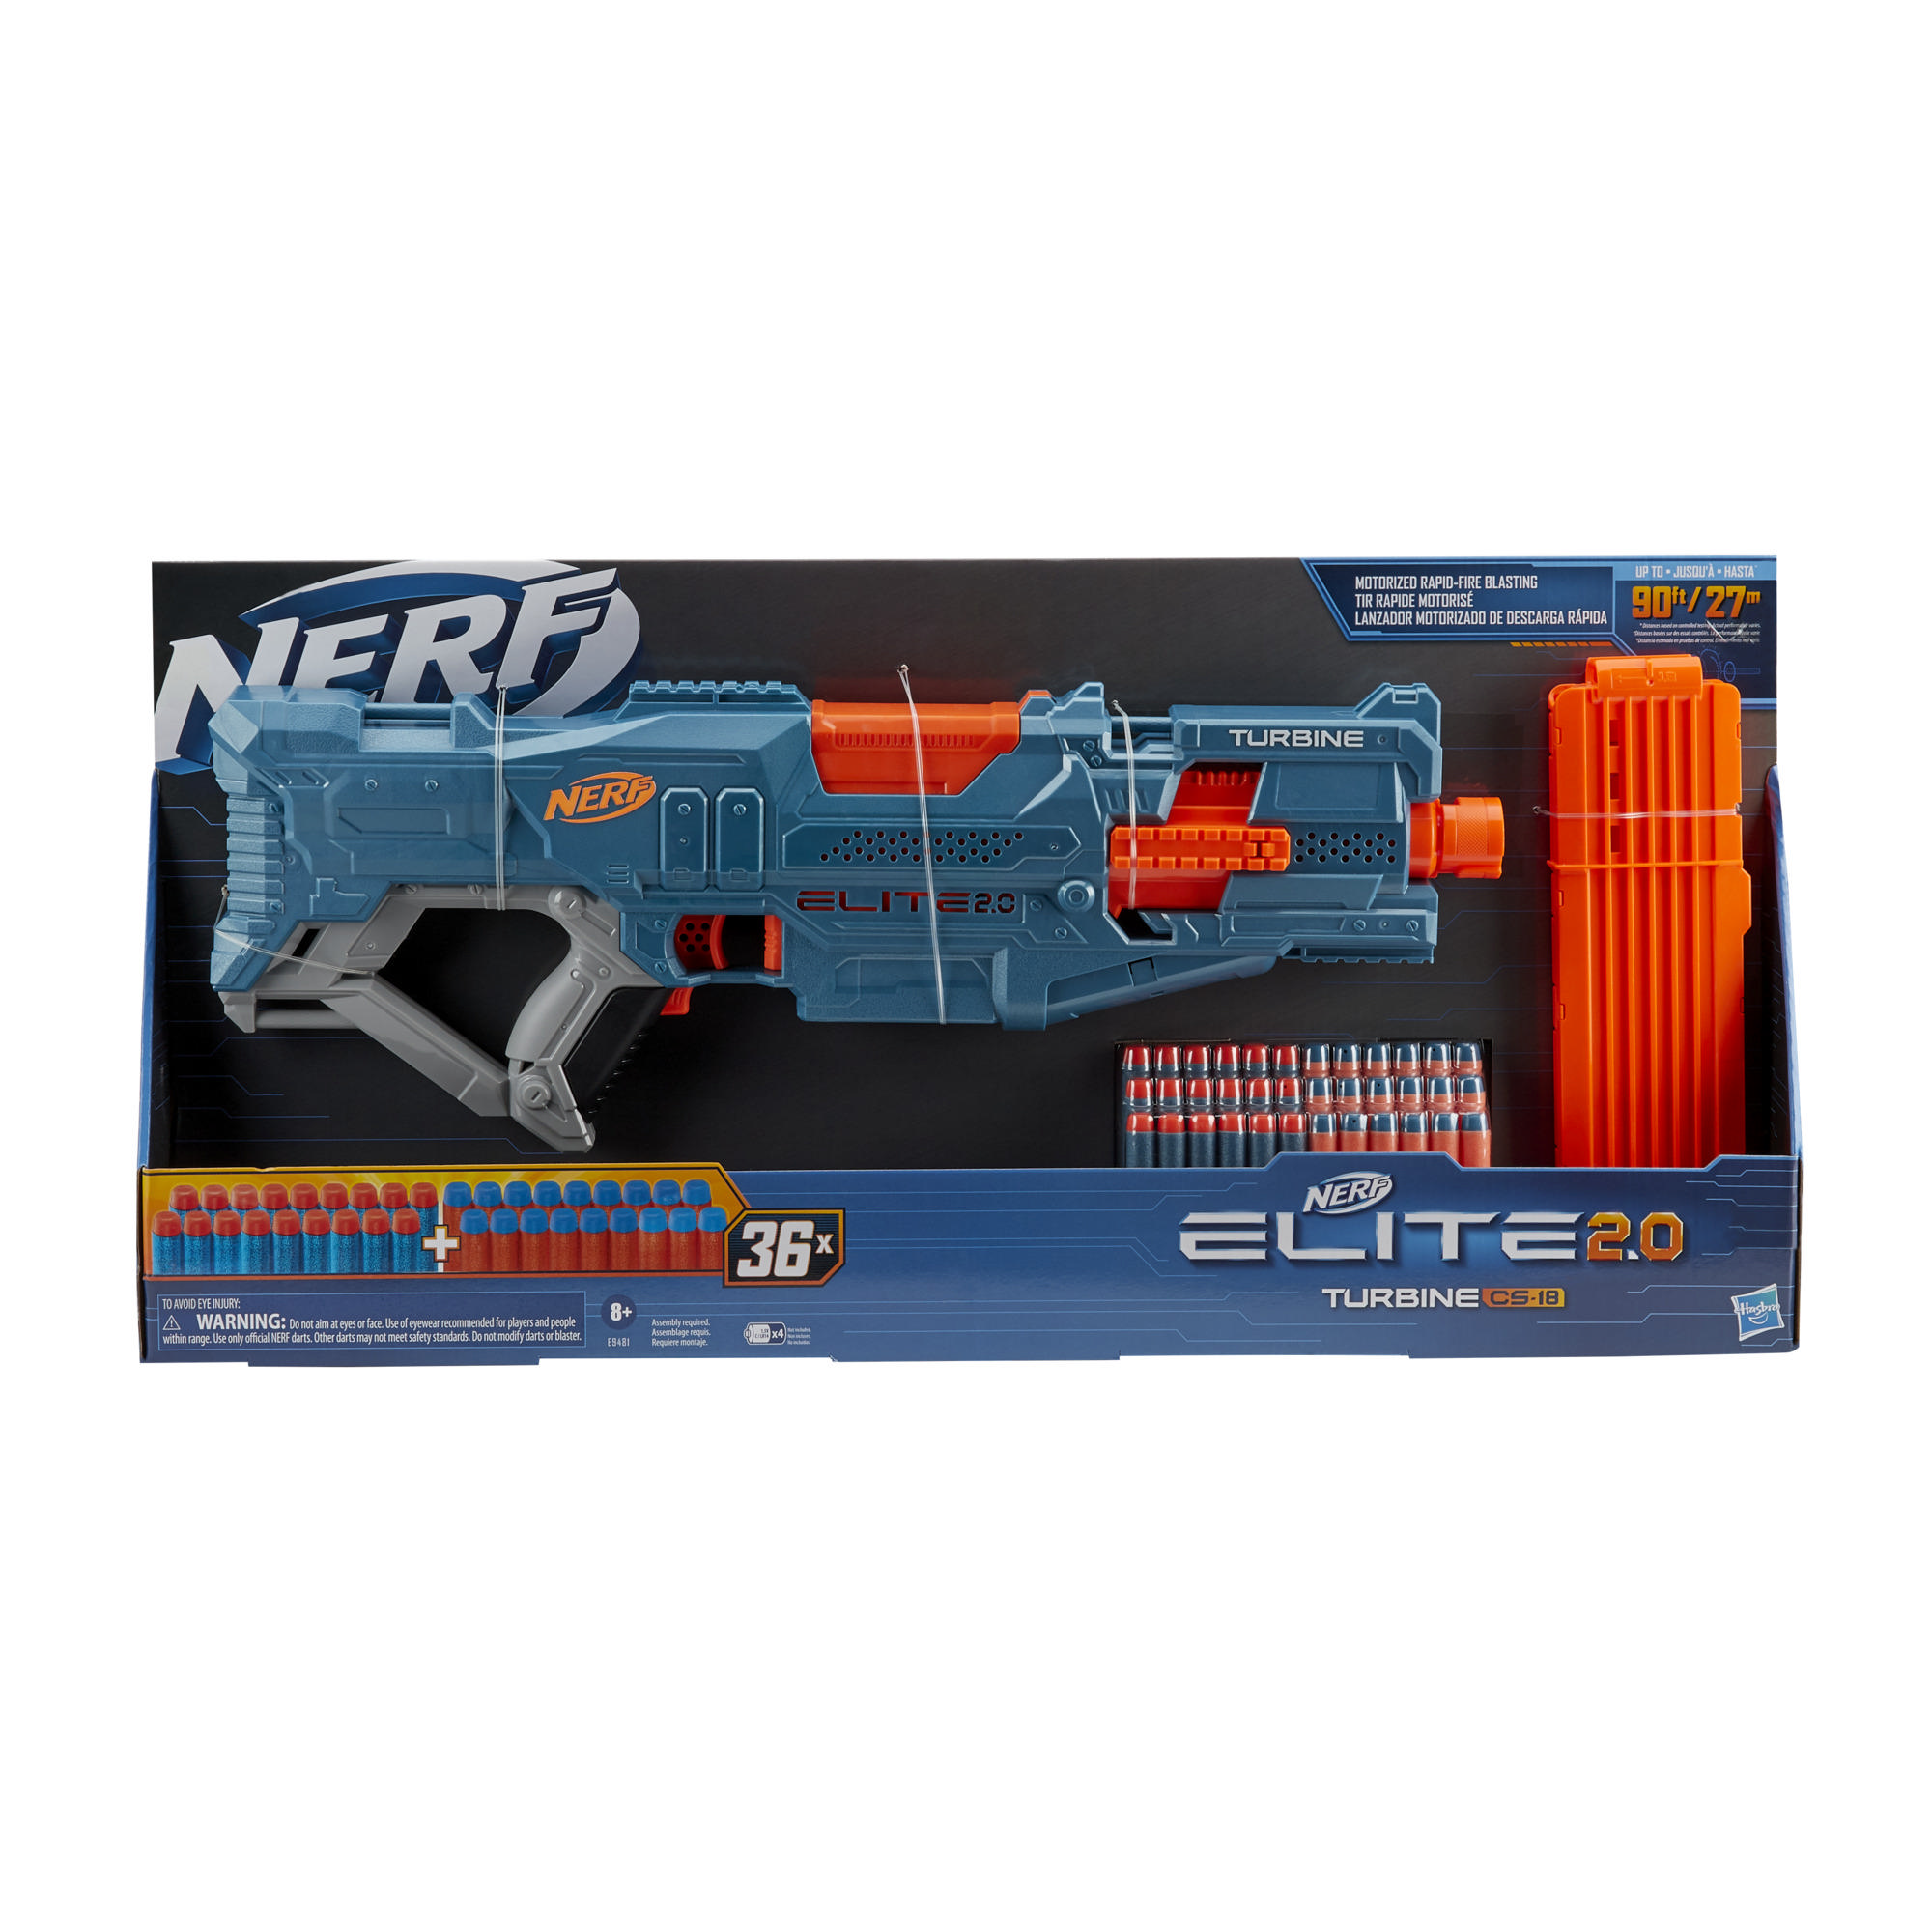 Nerf Elite 2.0 Turbine CS-18 gemotoriseerde blaster, 36 Nerf-darts, magazijn voor 18 darts, ingebouwde aanpassingsmogelijkheden